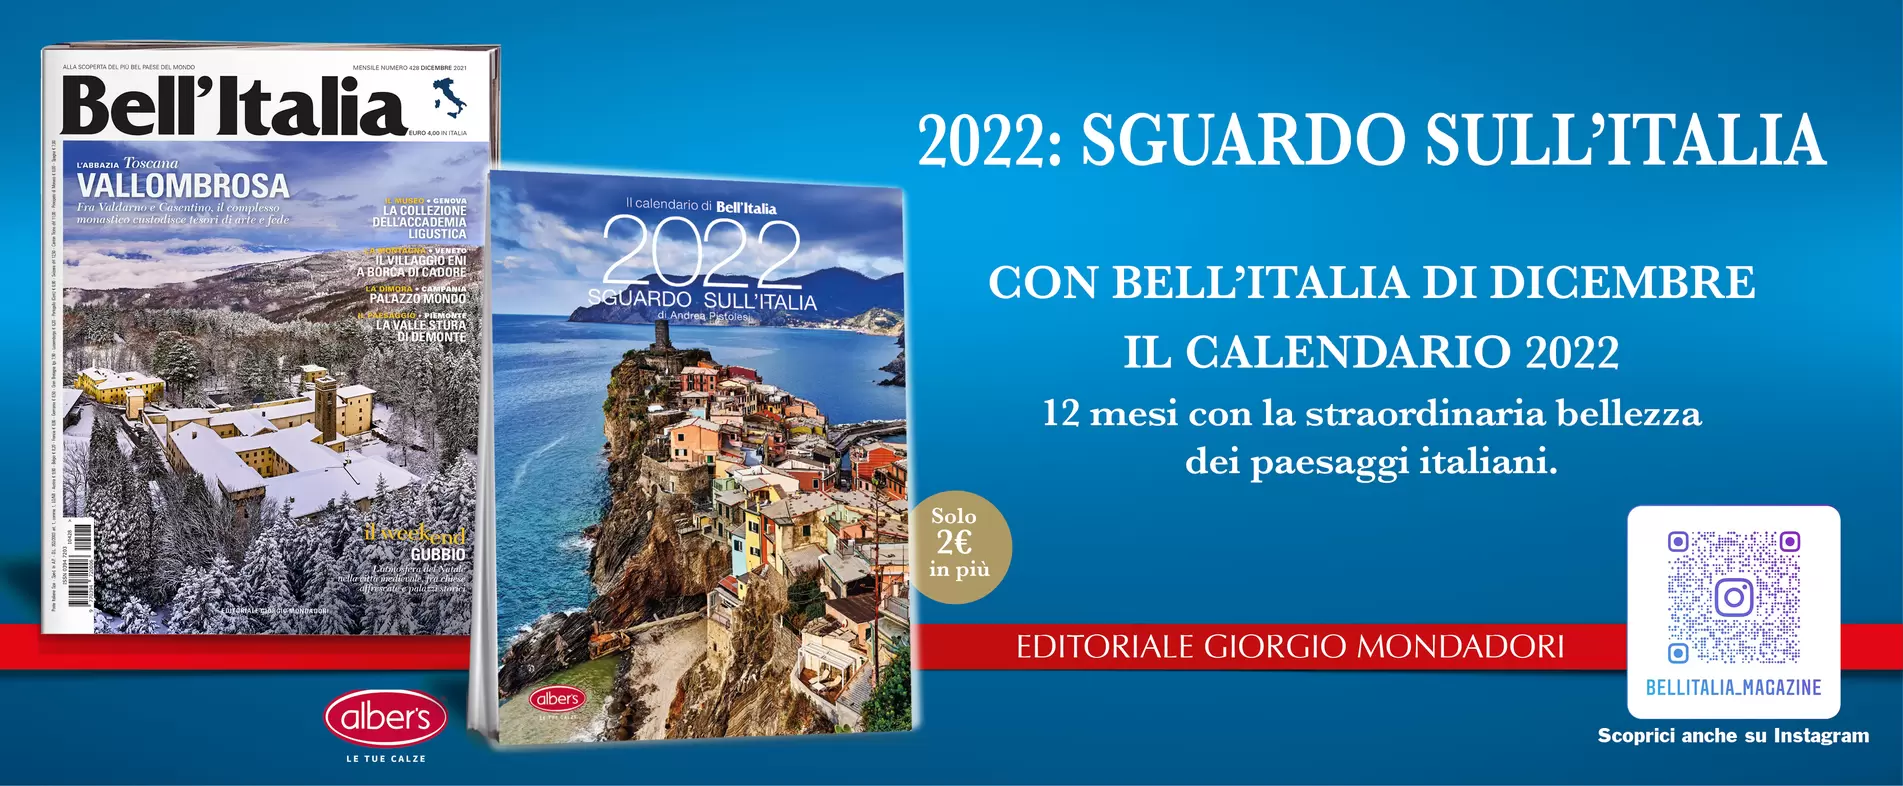 2022: SGUARDO SULL’ITALIA